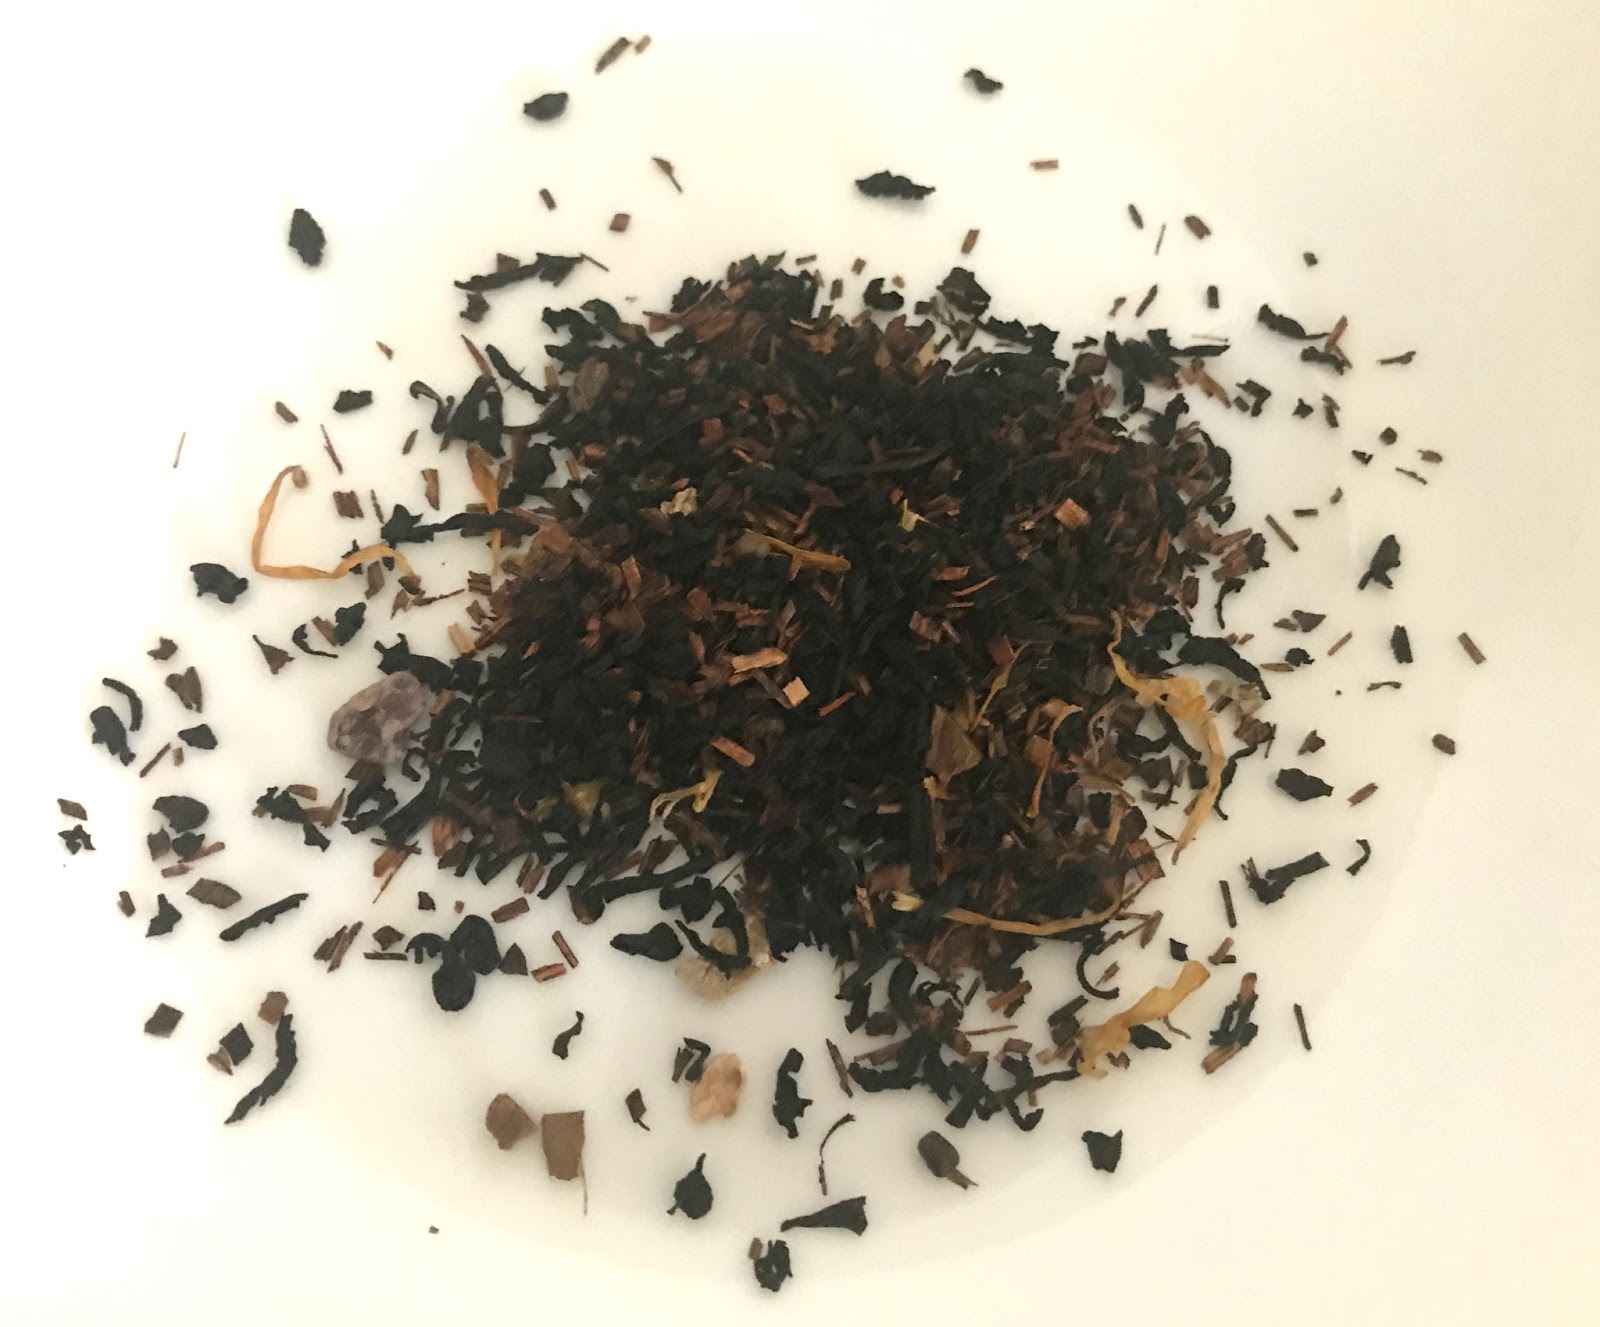 Relevant Tea Leaf Peach Cobbler Tea from Plum Deluxe Tea